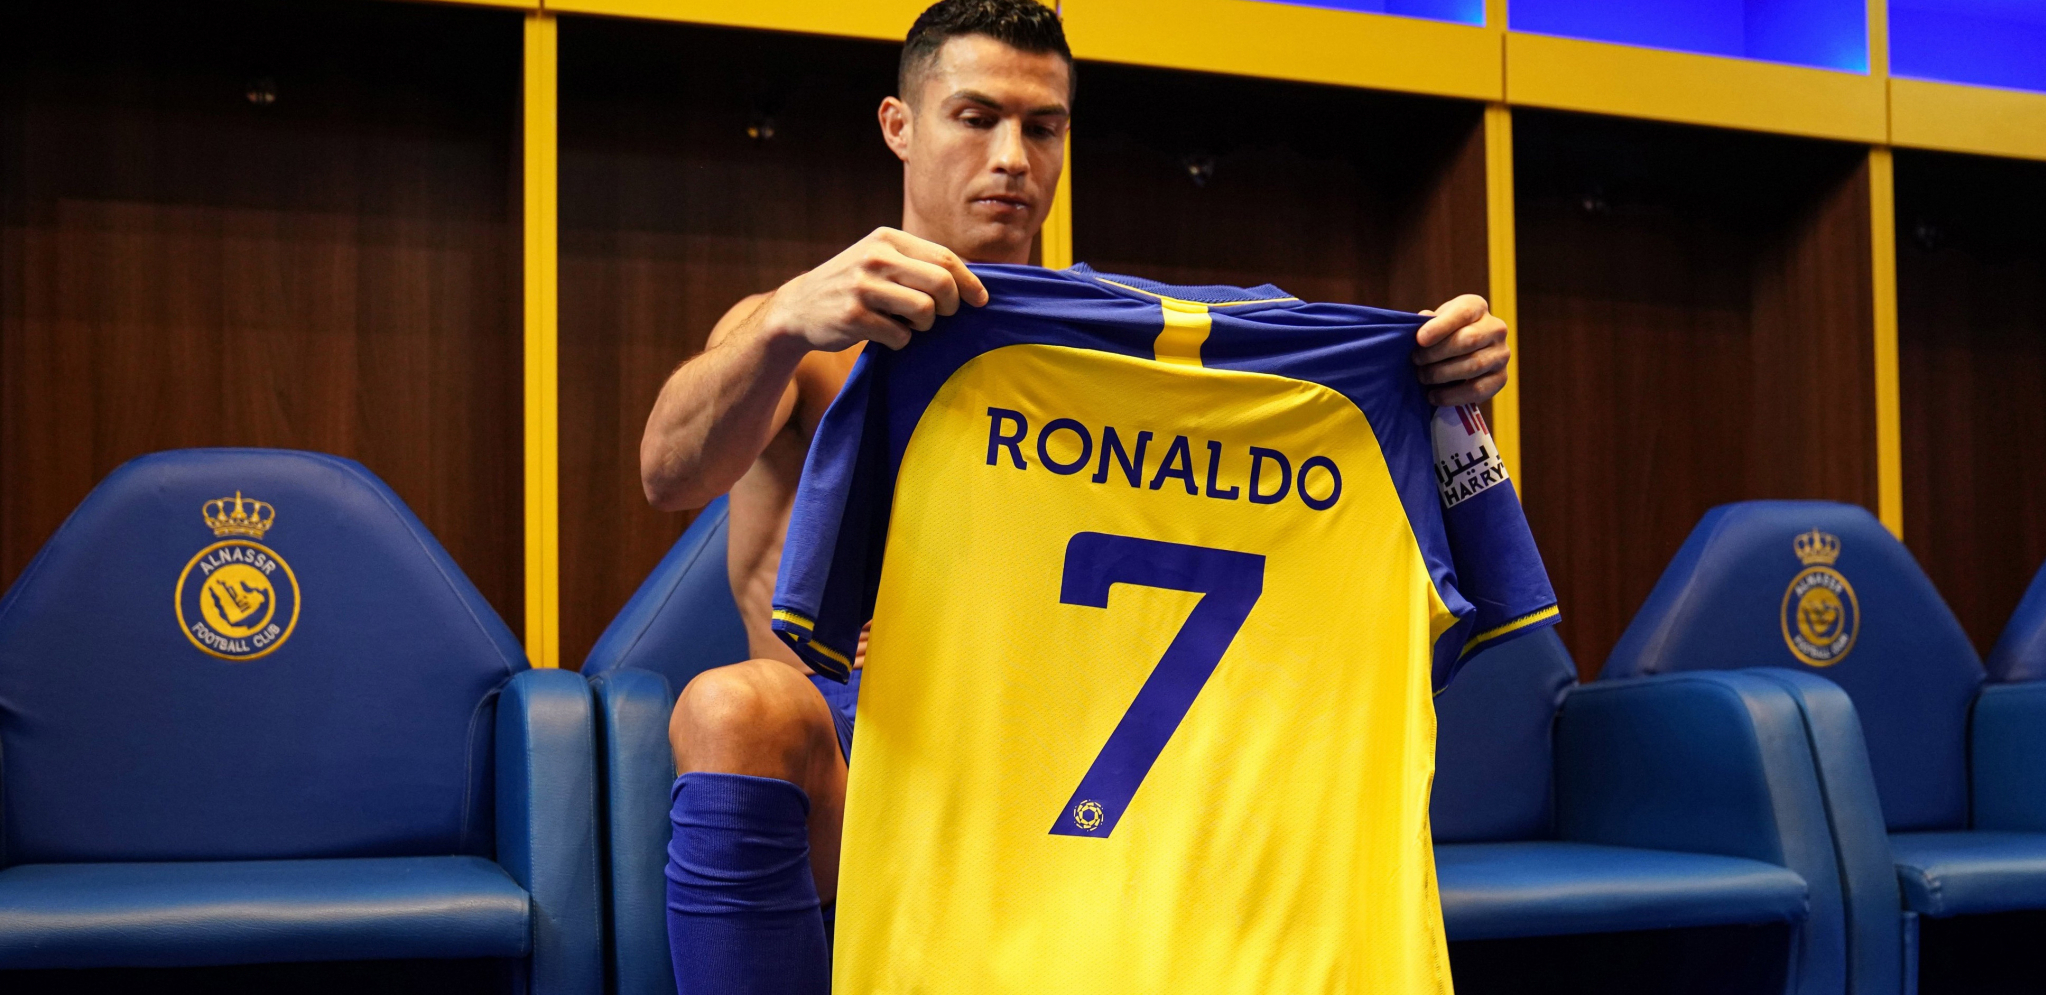 PORTUGALAC NASTAVLJA DA POMERA GRANICE Ronaldo najplaćeniji sportista sveta